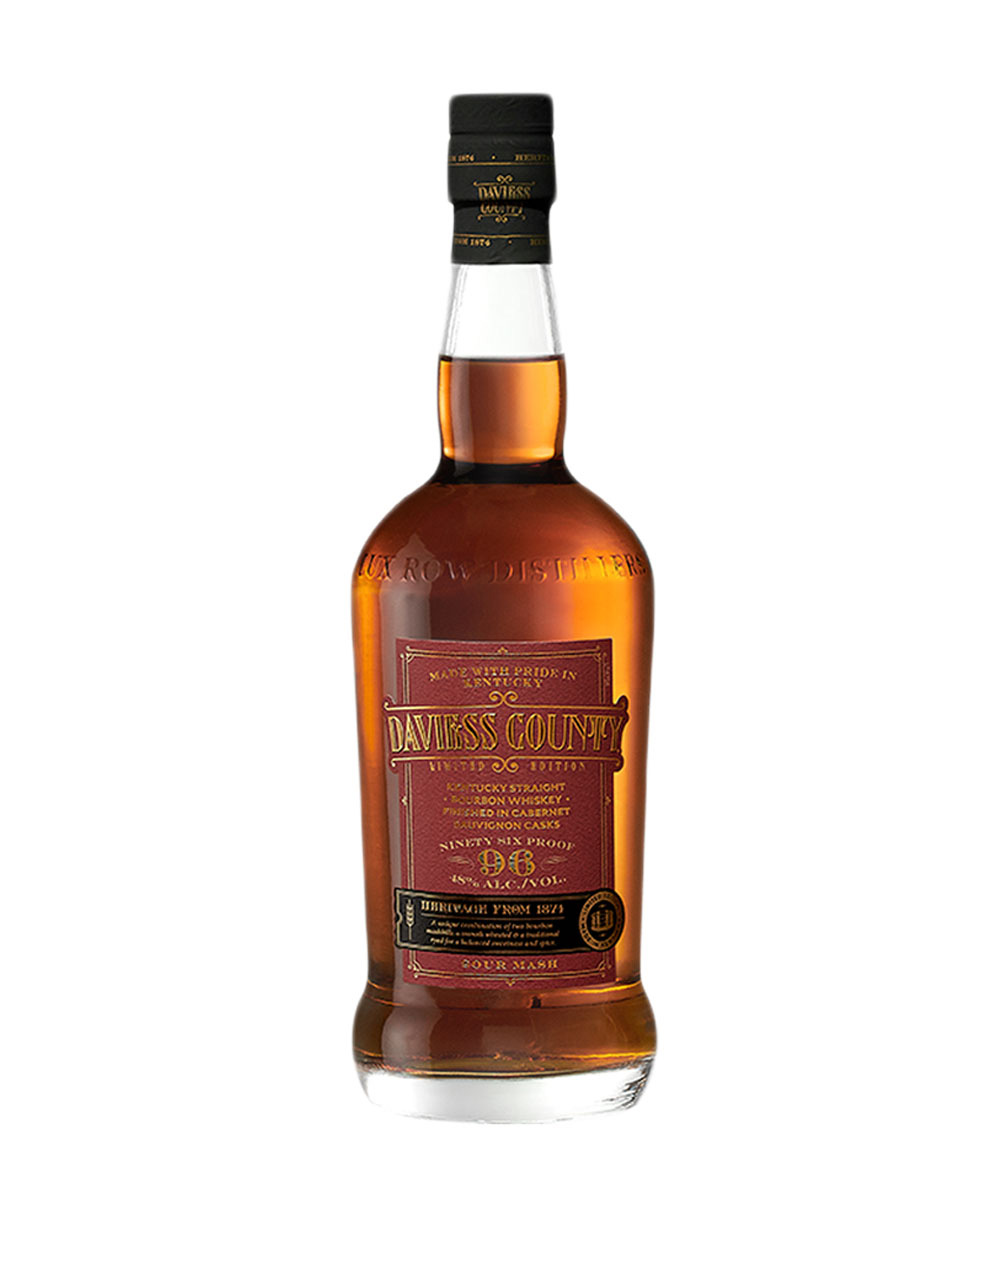 Glencadam 10 Year Old Single Malt Scotch Whiskey